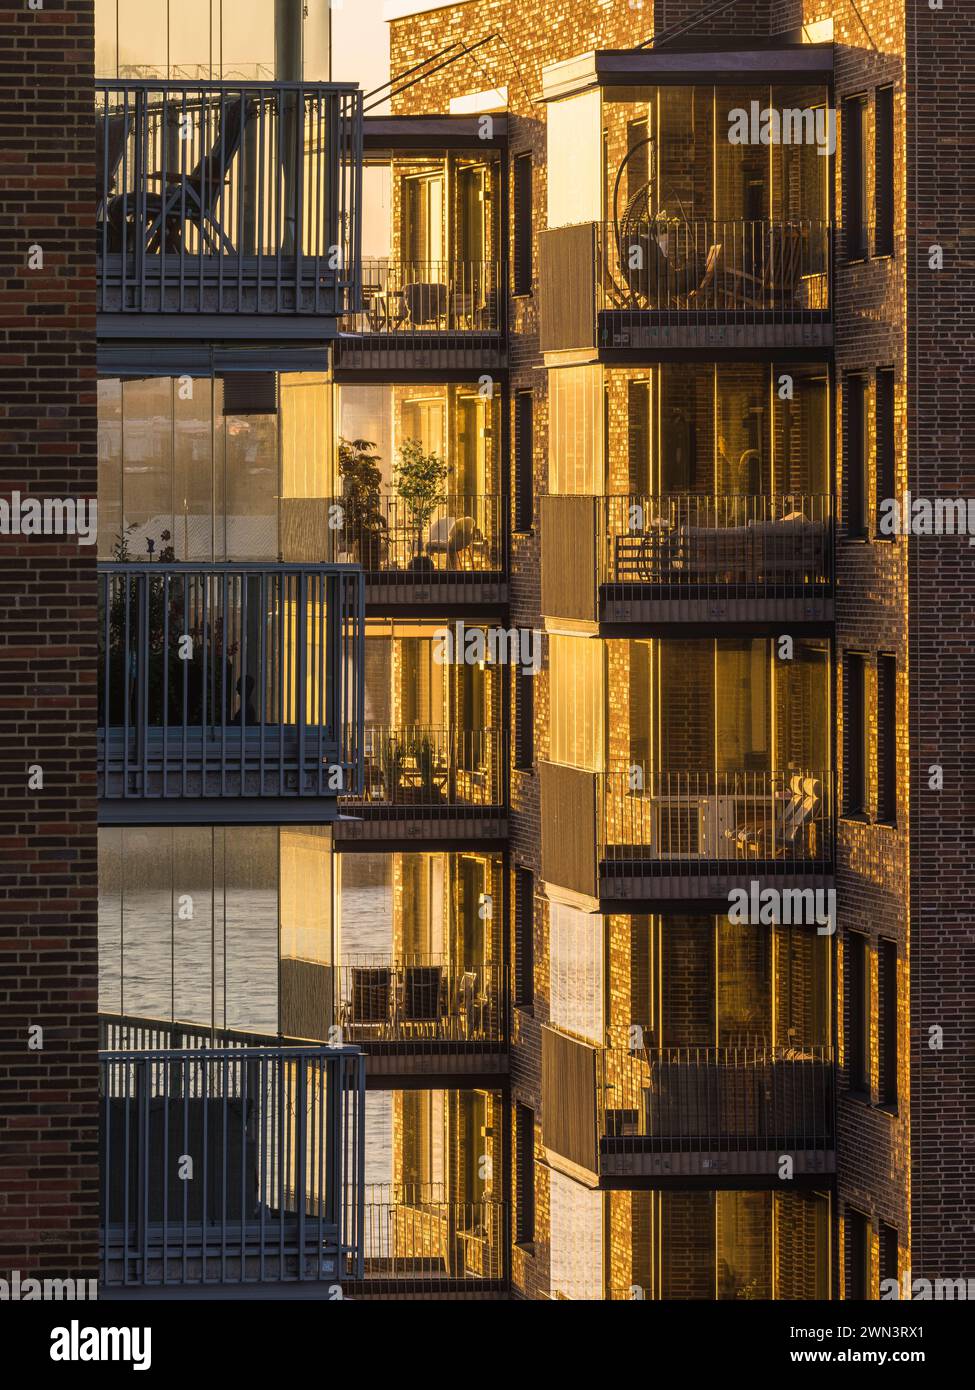 Le soleil couchant baigne les balcons modernes d'un immeuble résidentiel à Gothenburg, en Suède, dans une lueur chaude. Les balustrades en verre reflètent le coucher du soleil Banque D'Images